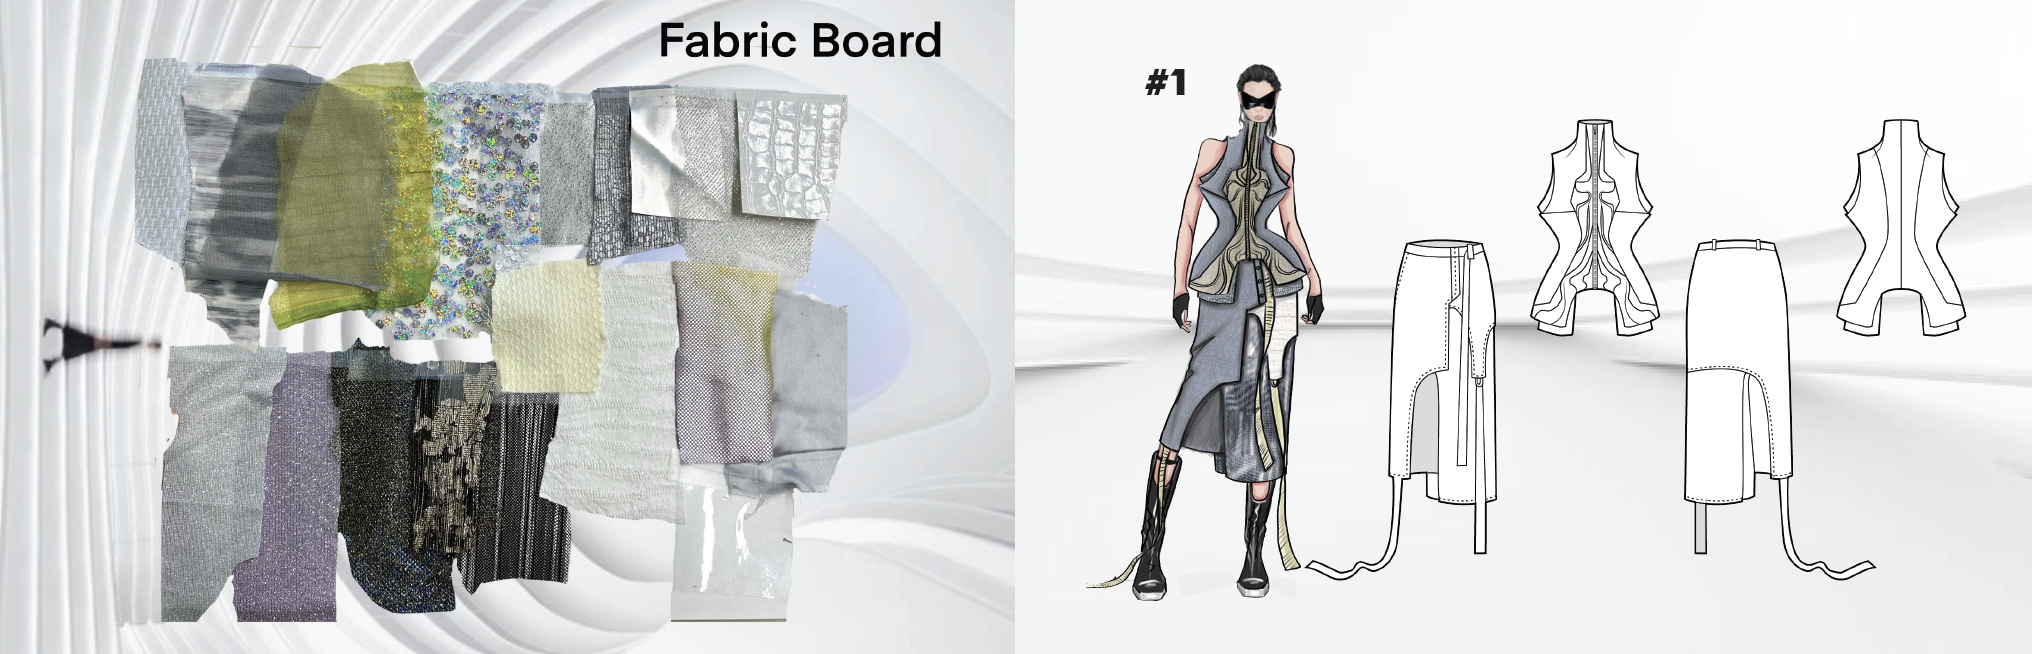 Fabric board